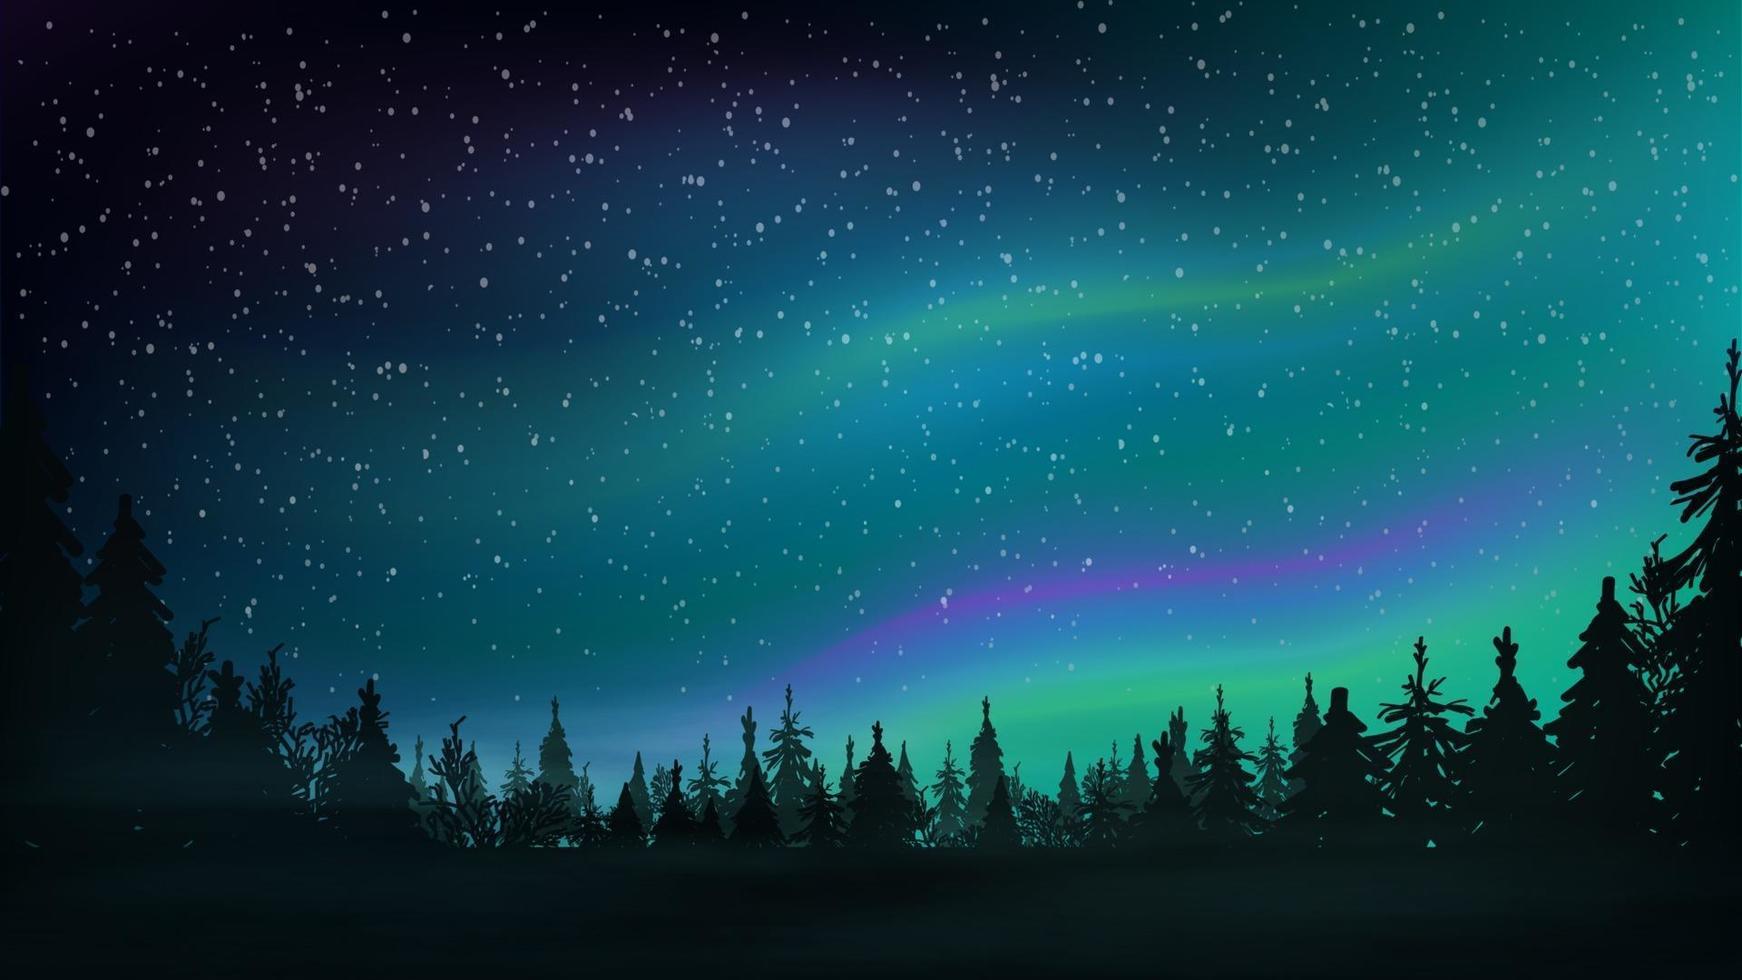 tallskog, stjärnhimmel och norrsken. nattlandskap med vacker himmel. vektor illustration.